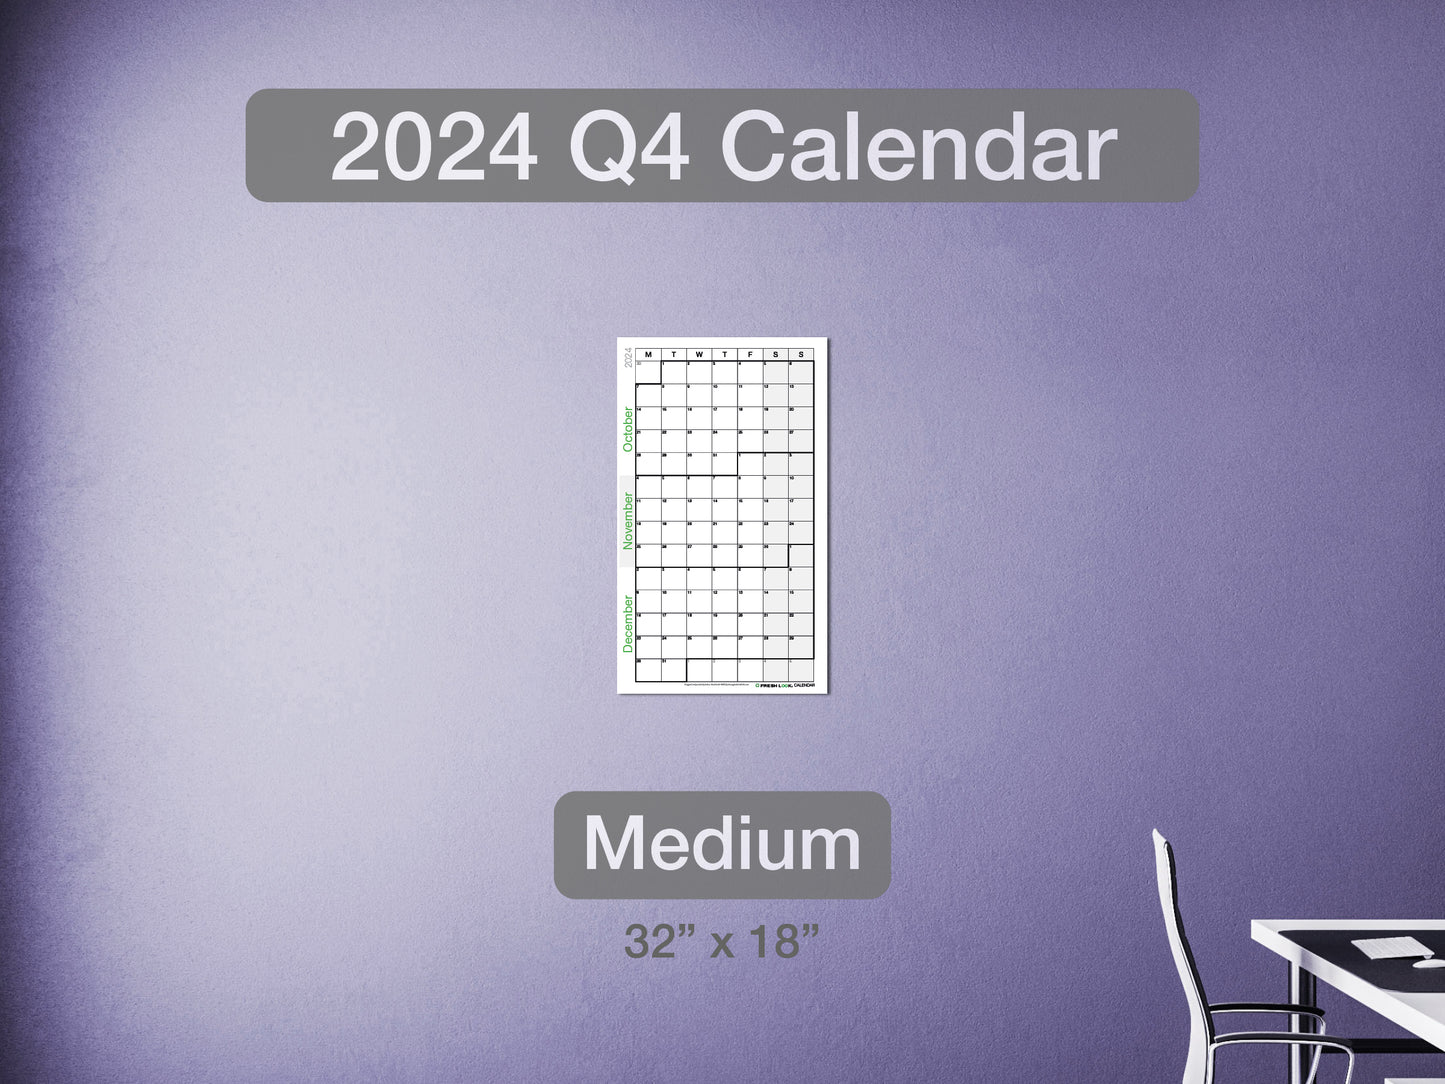 2024 Q4 Calendar Medium